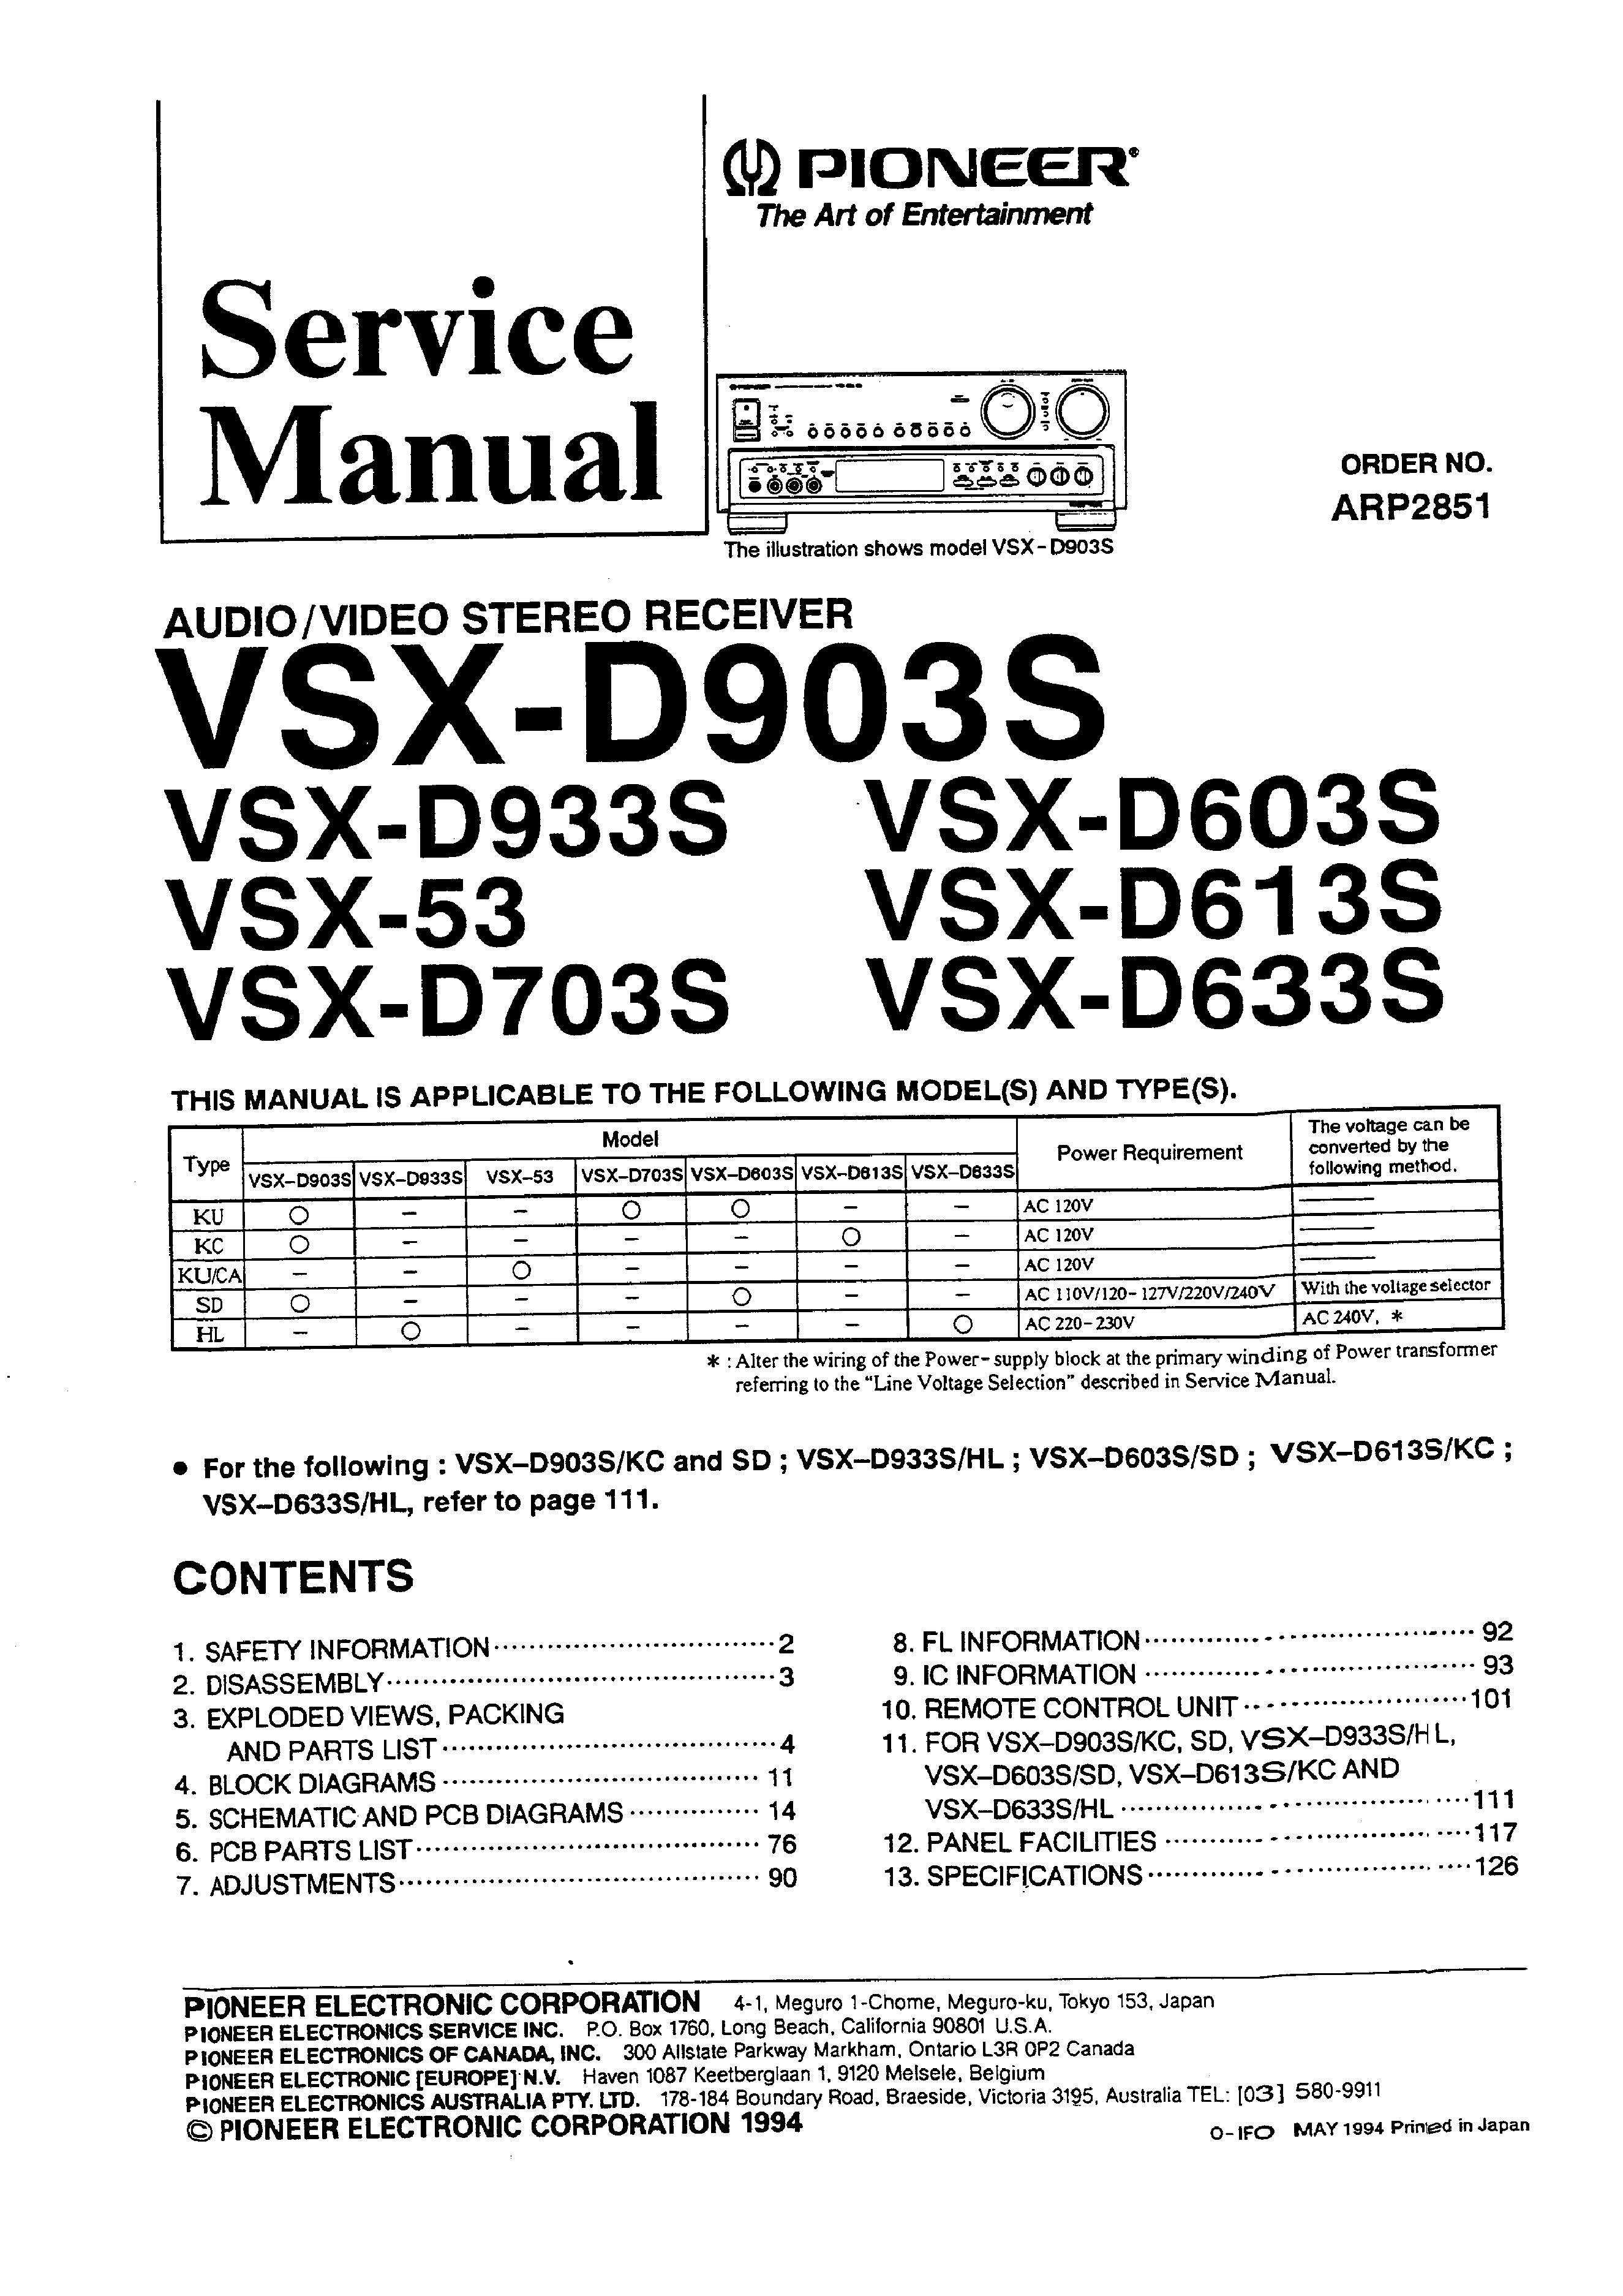 Pioneer VSX-D633S